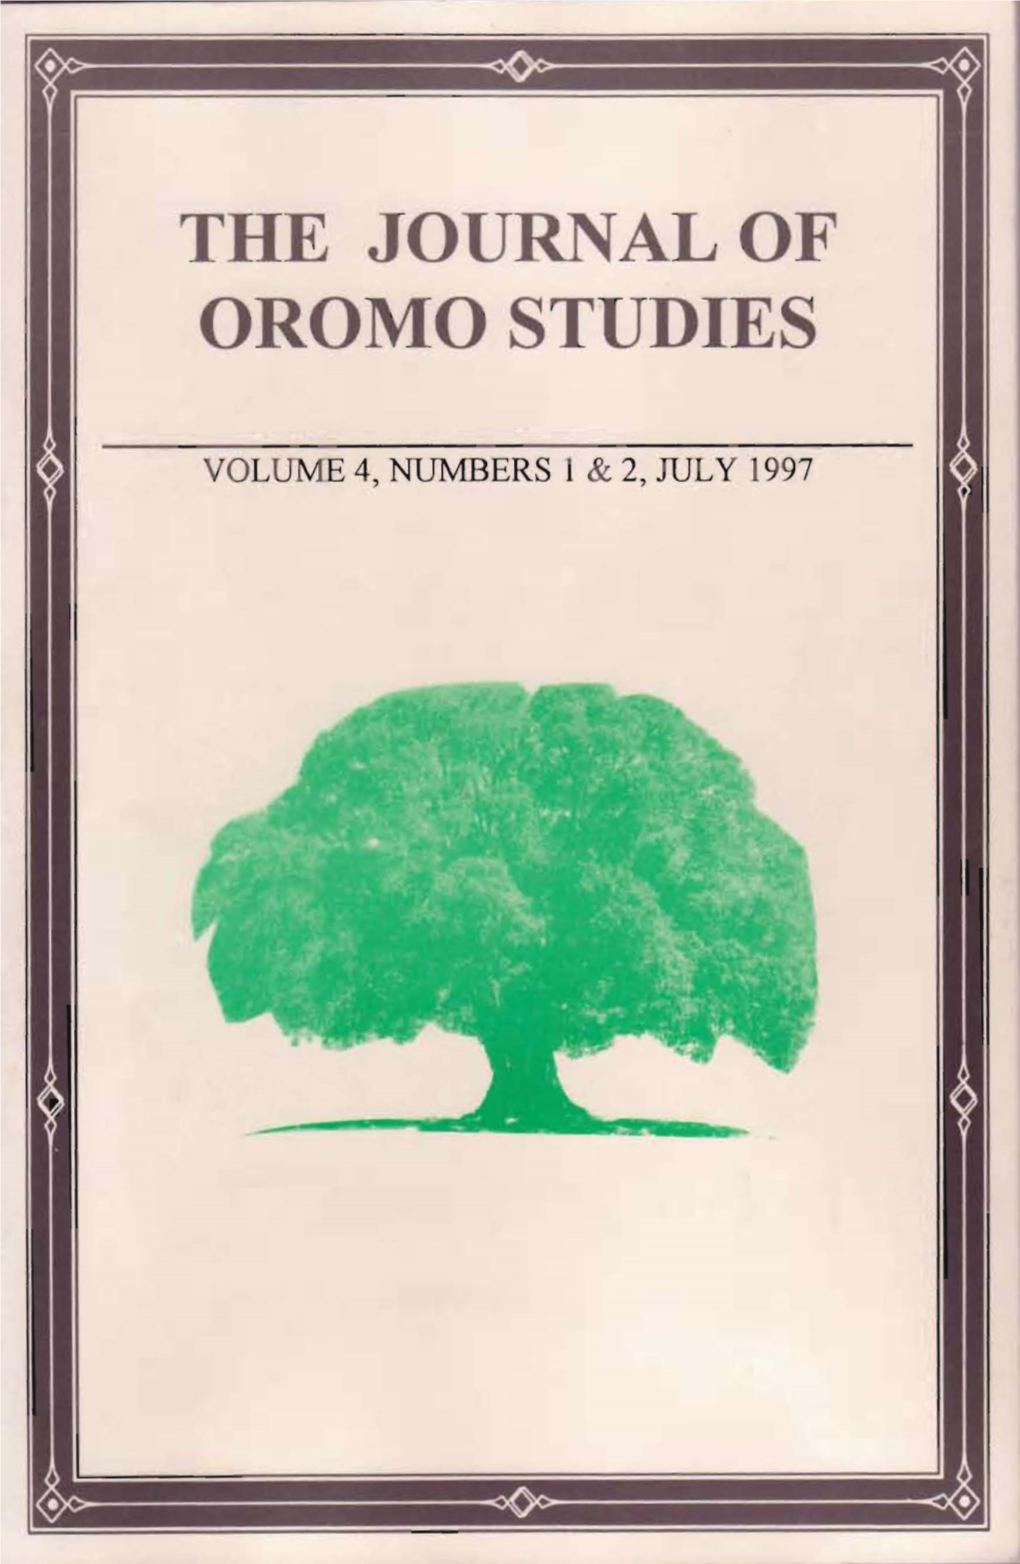 The Journal of Oromo Studies